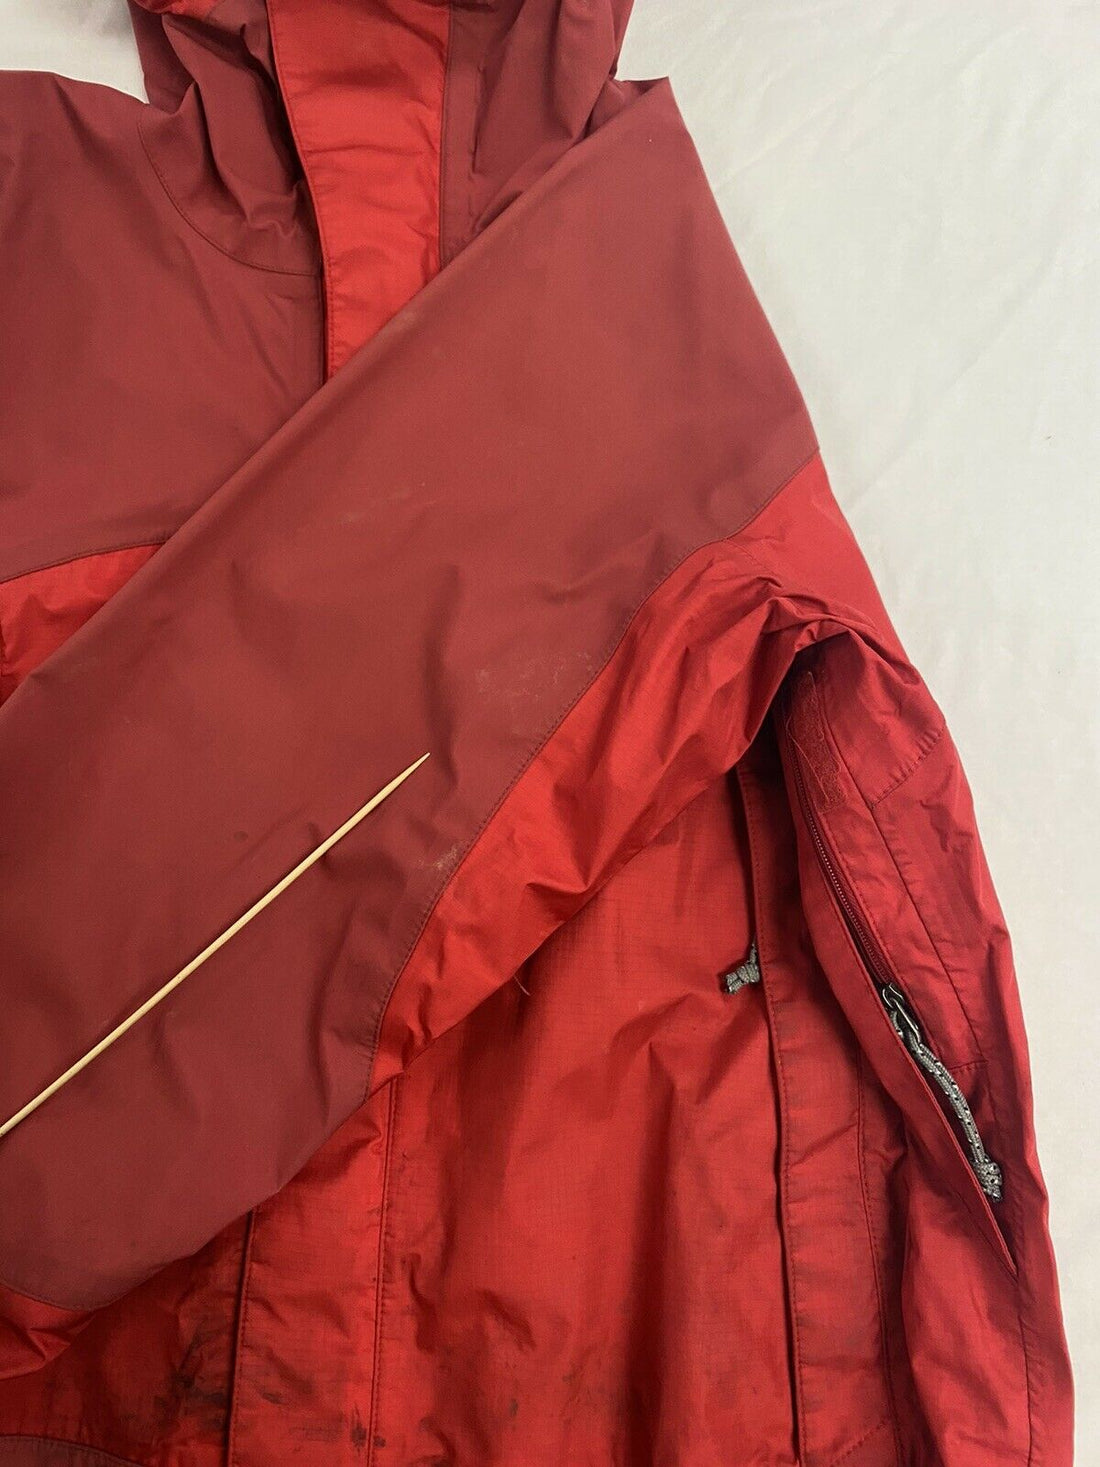 Vintage Patagonia Windbreaker Light Ski Jacket Size Medium Red